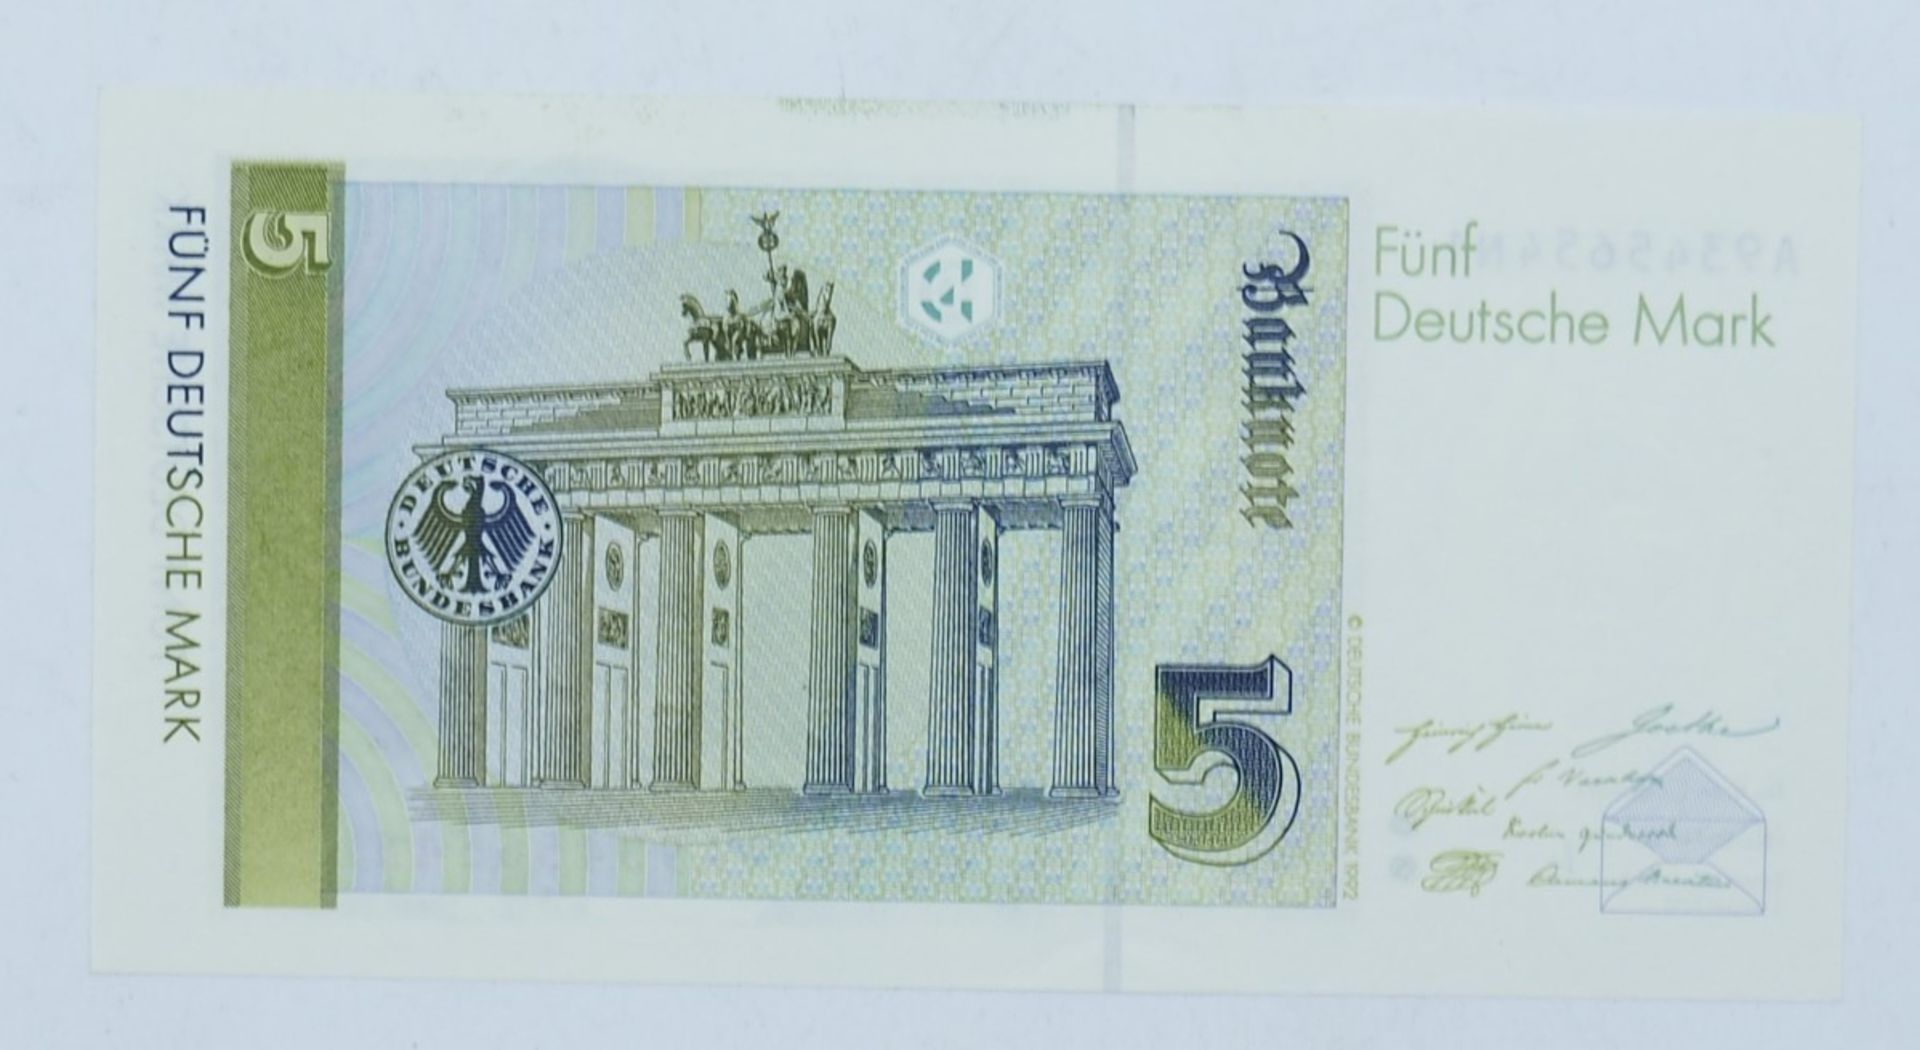 BRD 1991, 5.- DM - Banknote, A - Serie. Erhaltung: Kassenfrisch. - Bild 2 aus 2